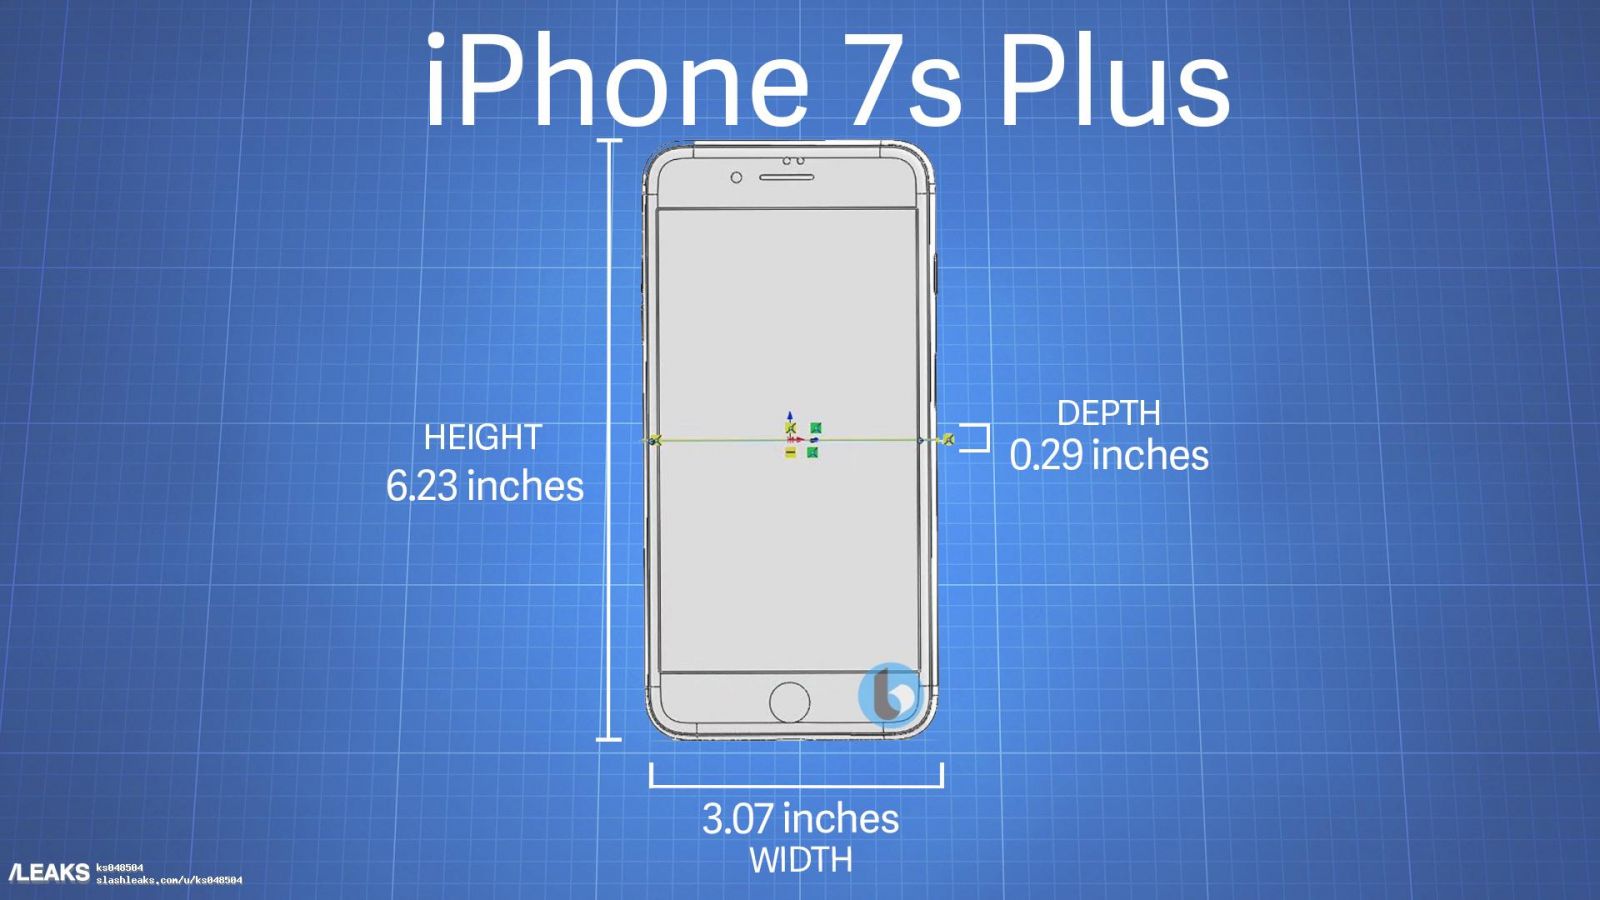 iPhone 7s Plus